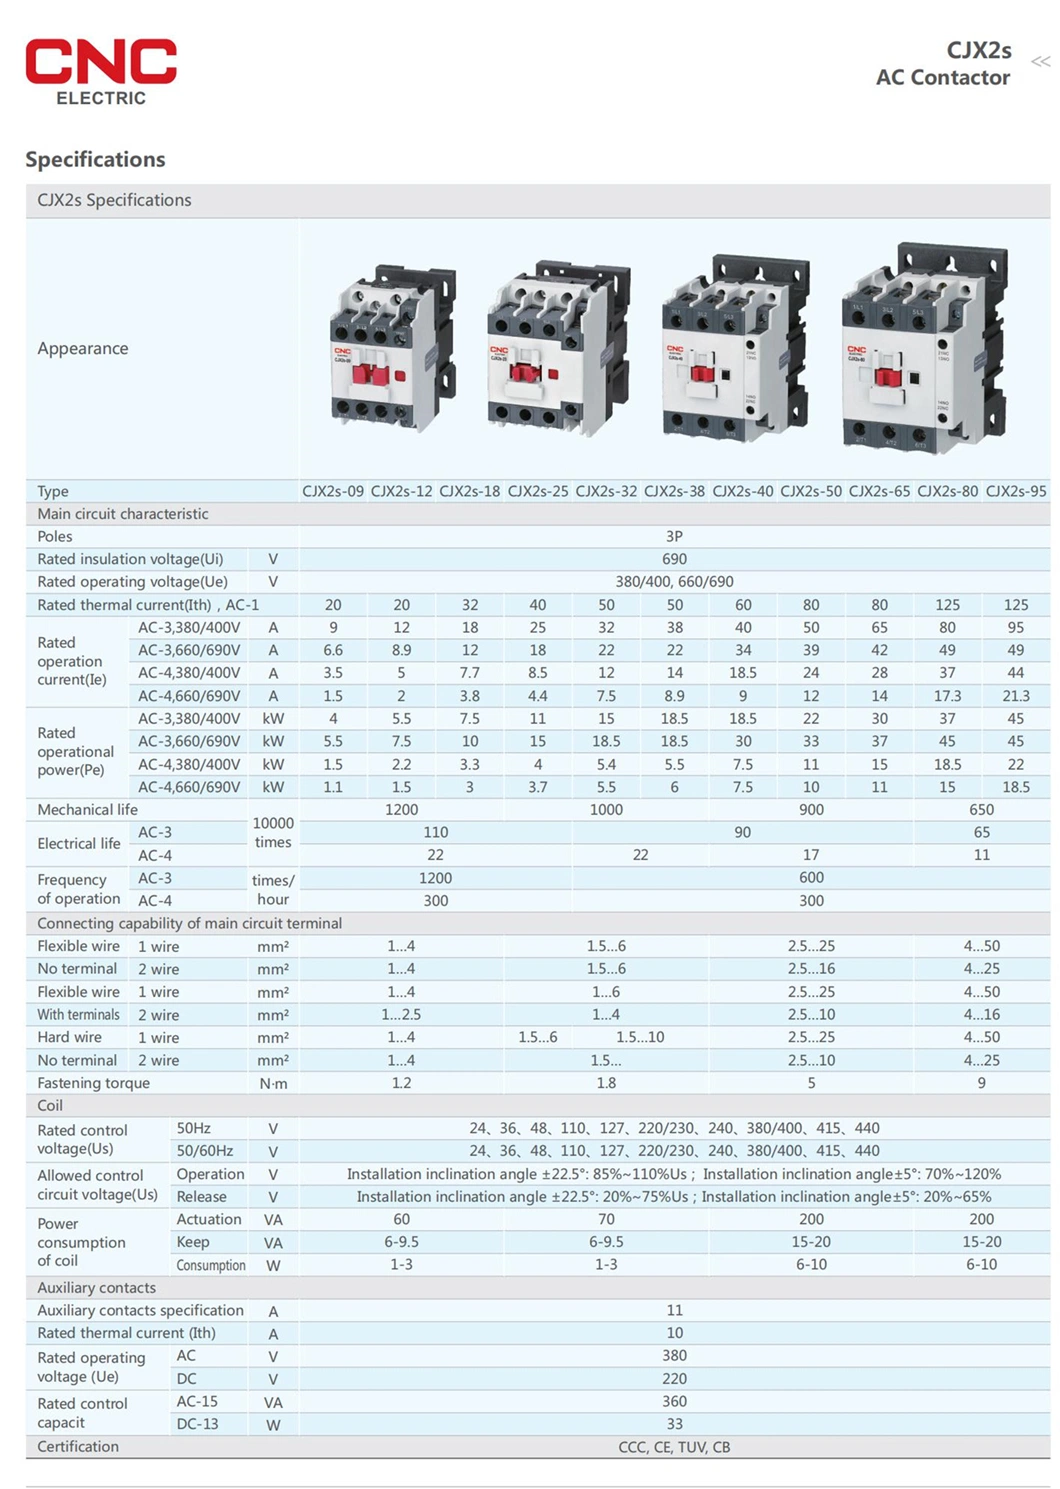 CNC Cjx2s-50 3p 50A 110V 1no +1nc AC 3 Poles Magnetic Contactor